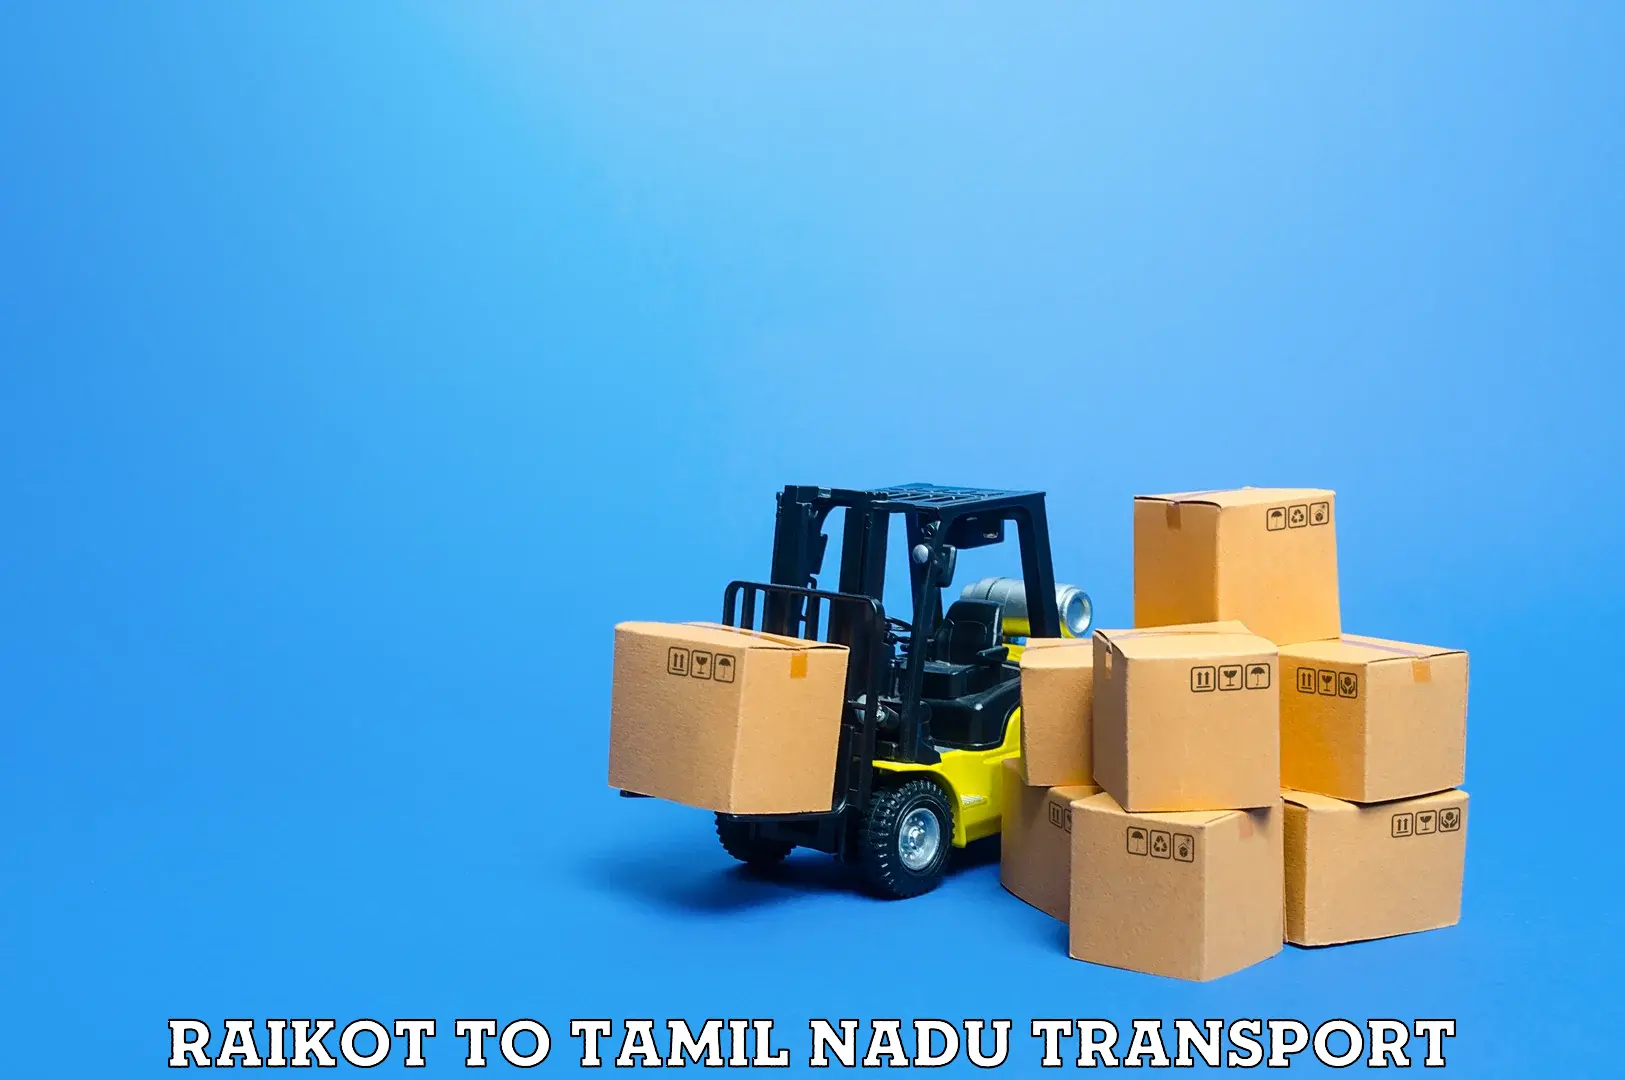 Cargo train transport services Raikot to Chennai